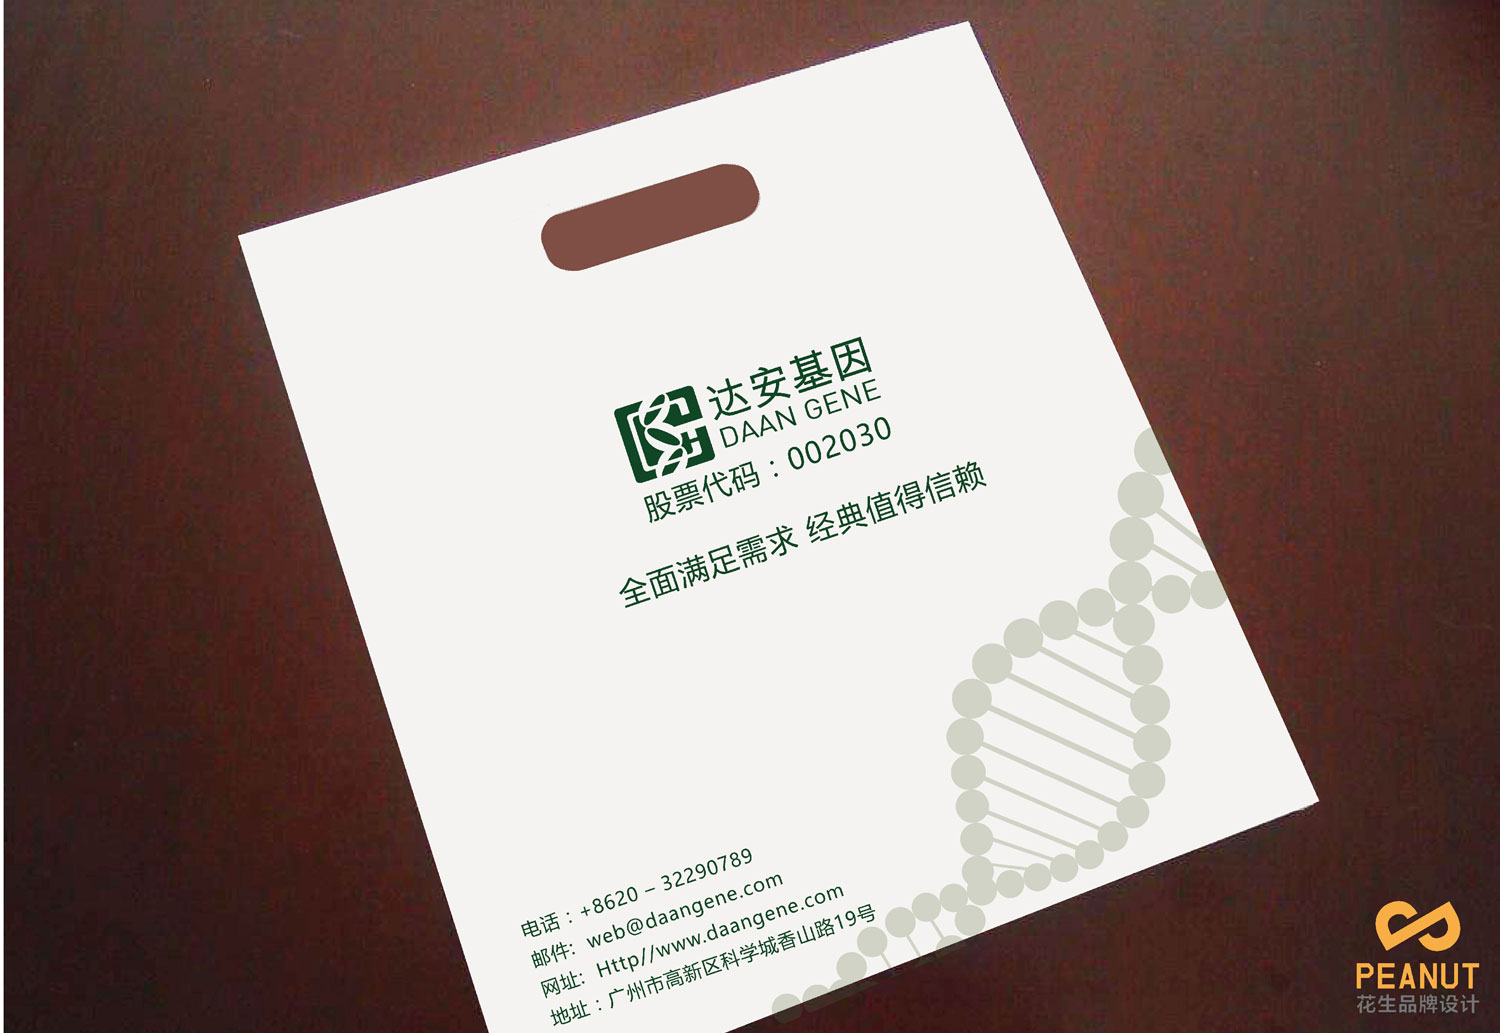 达安基因品牌设计，医疗品牌设计公司，广州VI设计-环保袋设计